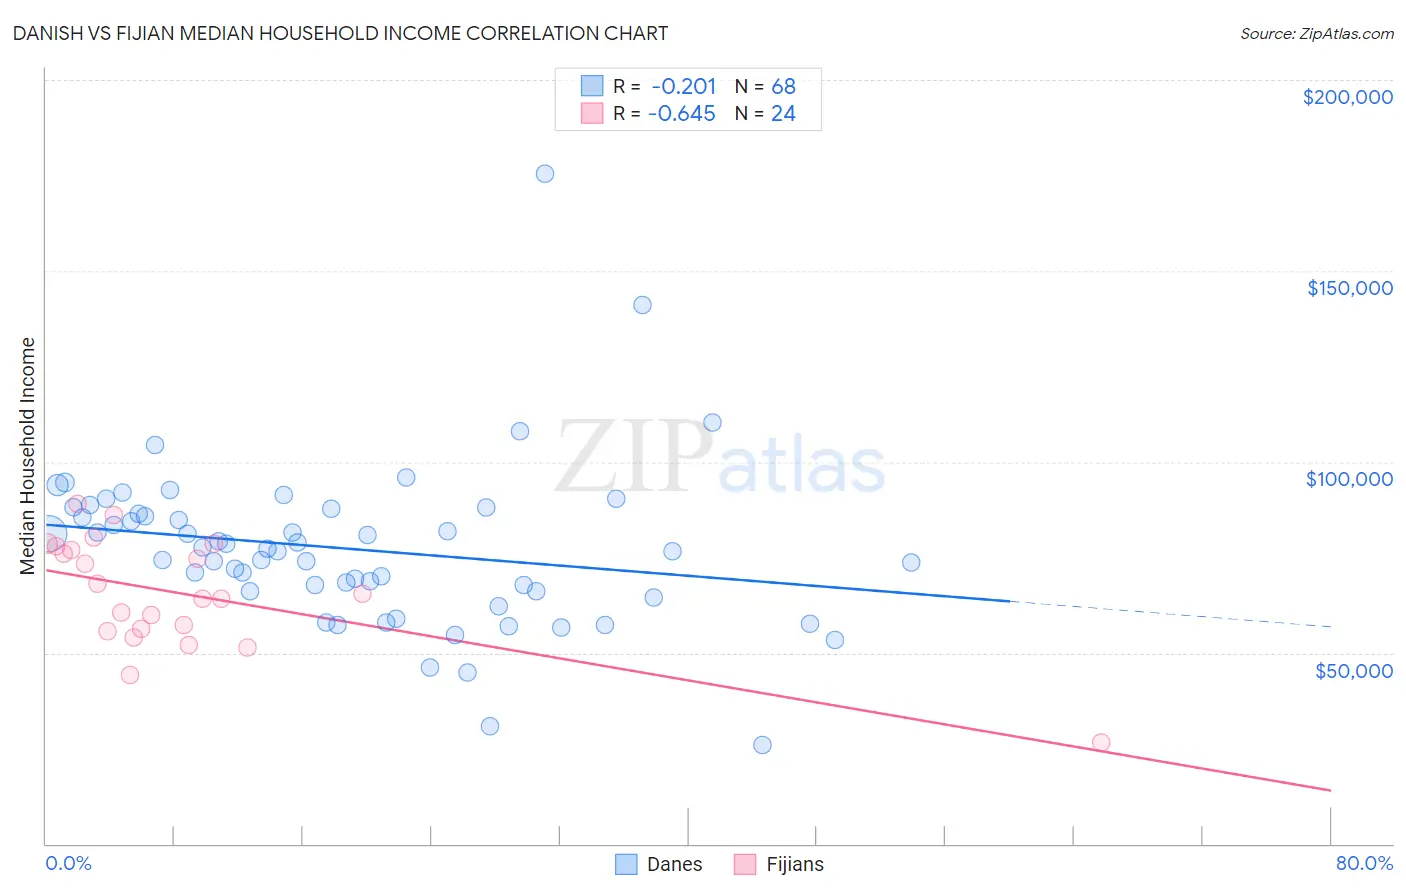 Danish vs Fijian Median Household Income